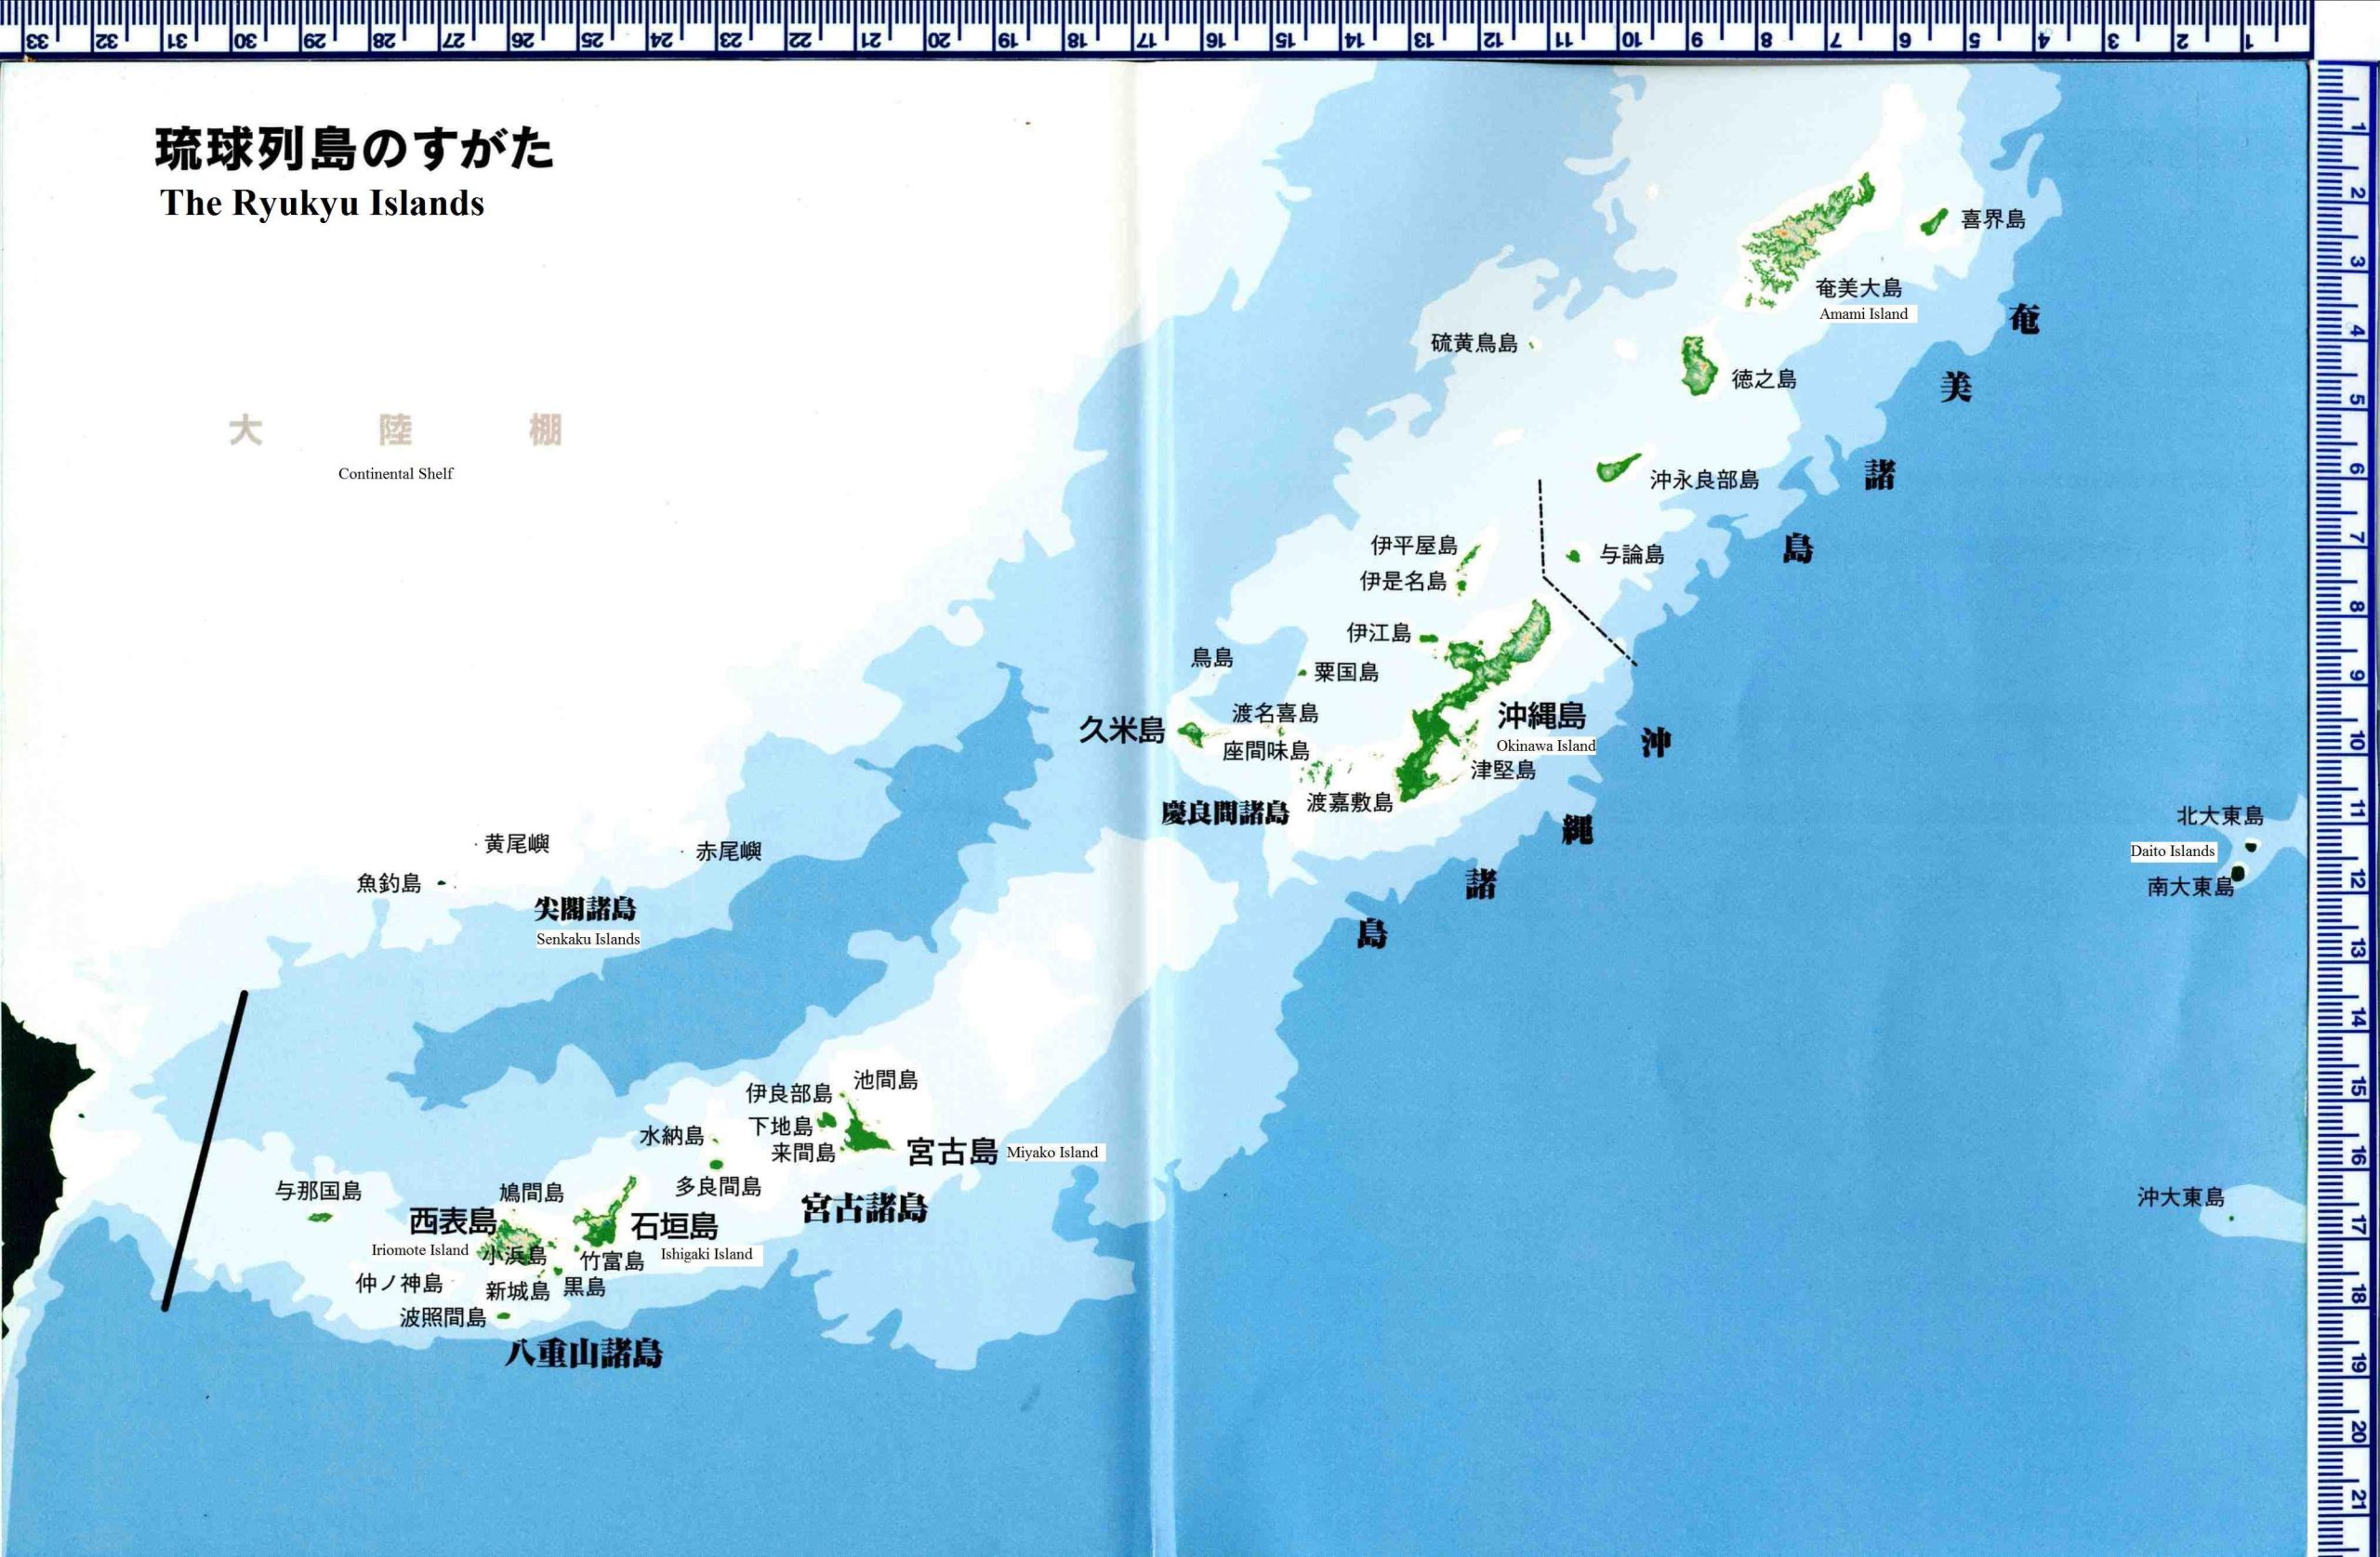 The China-Japan Clash Over the Diaoyu/Senkaku Islands